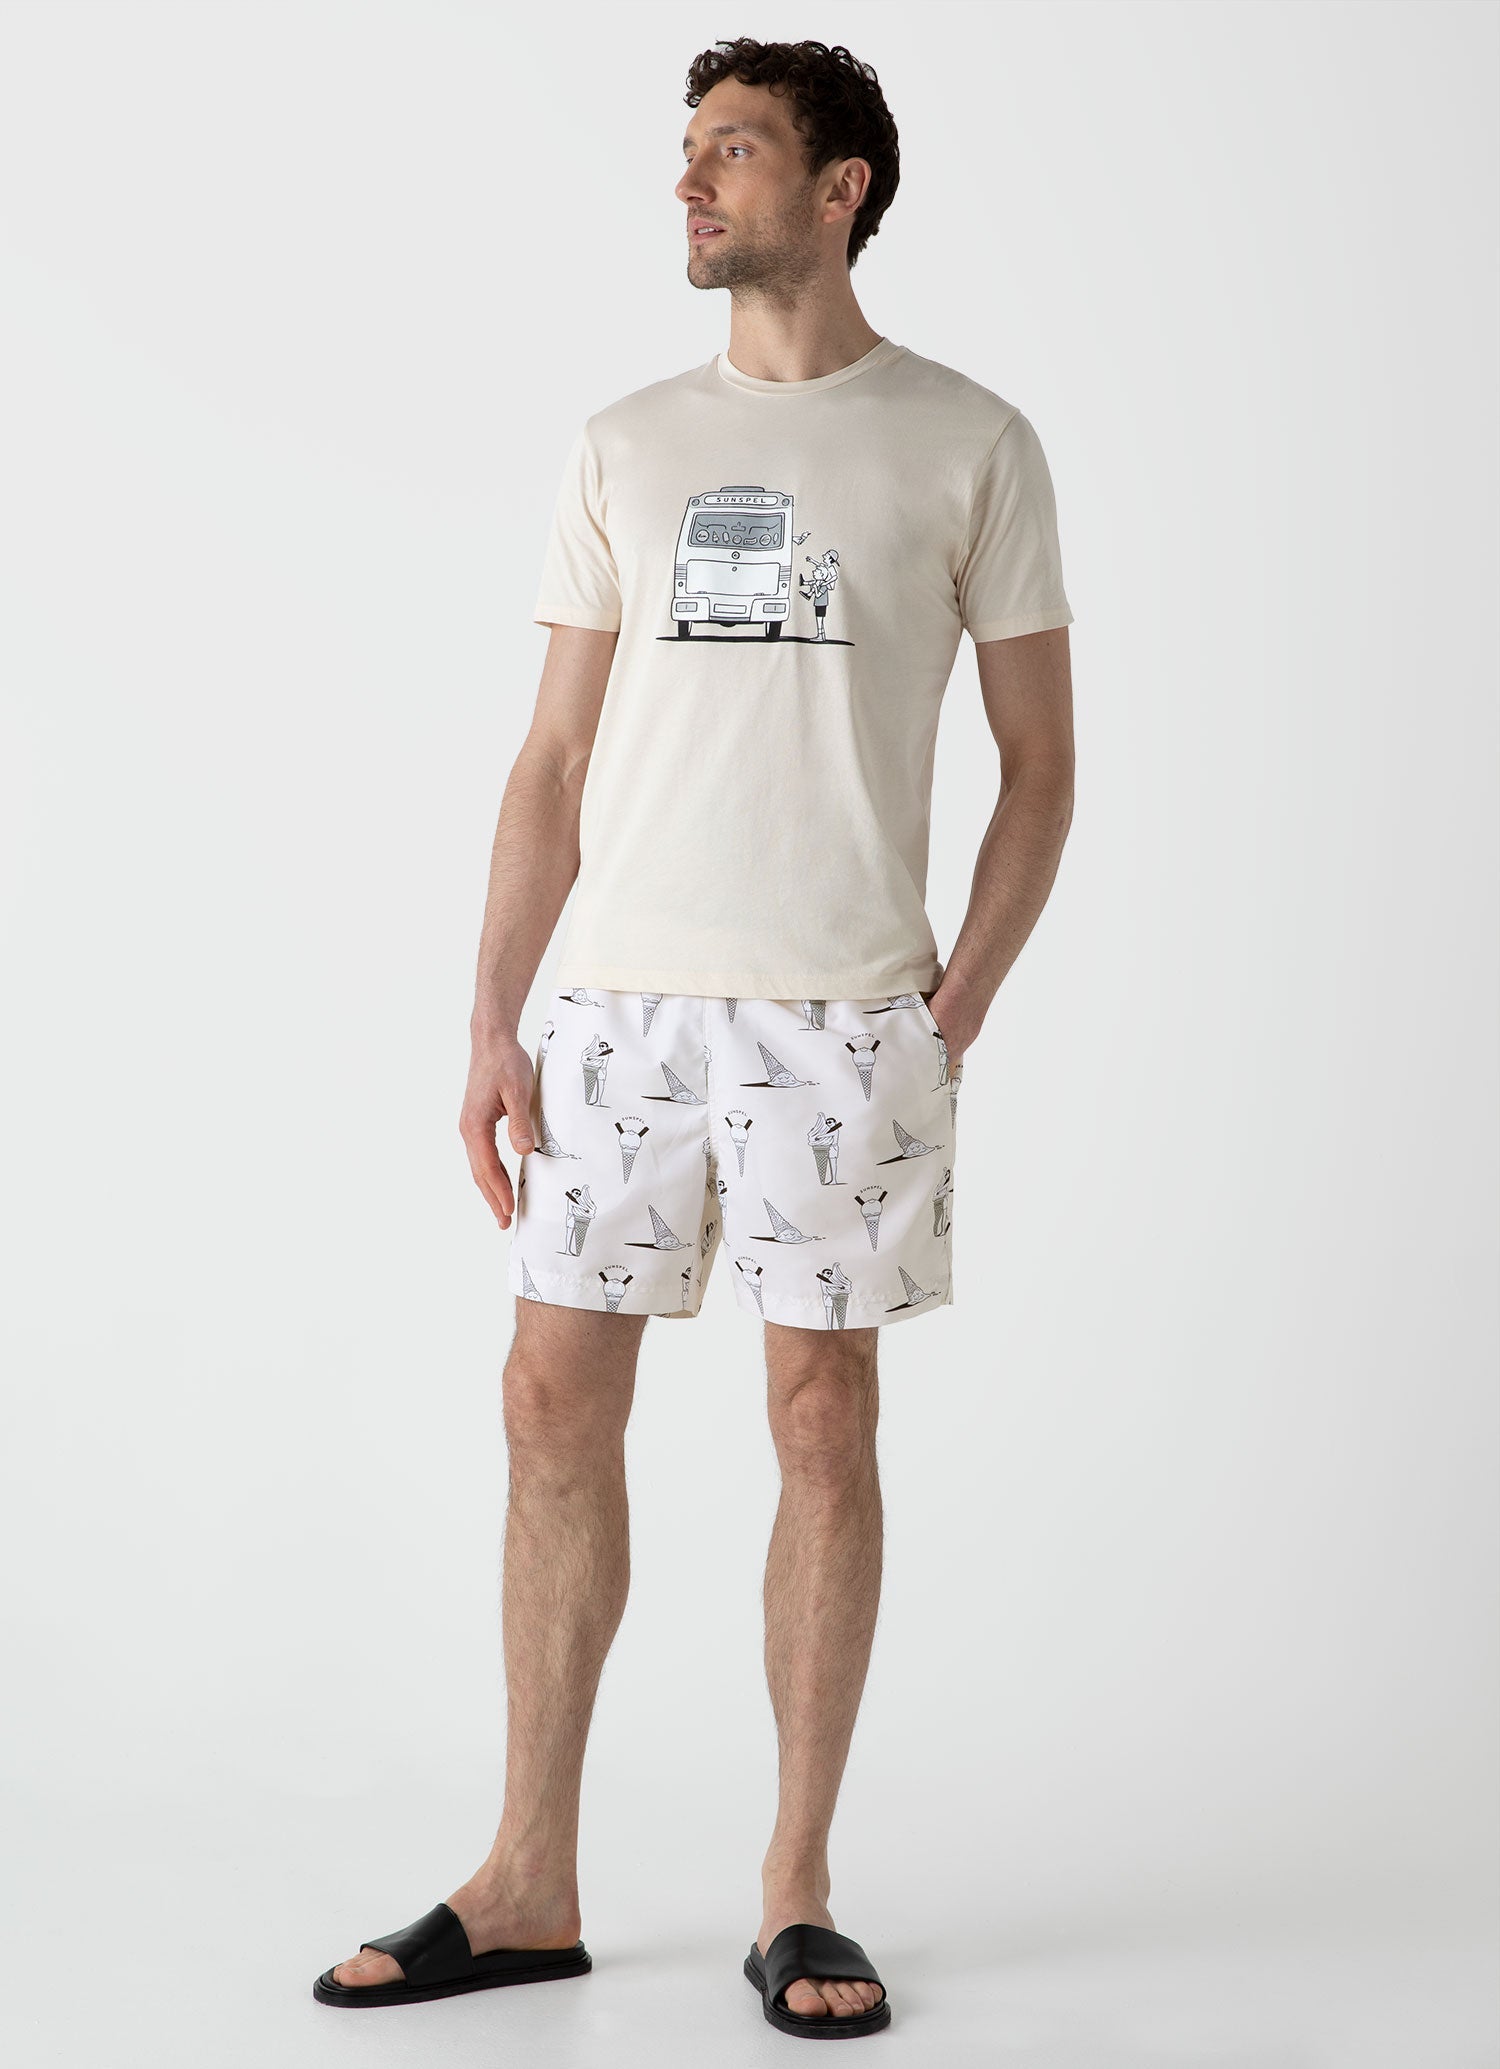 Men's Matt Blease Print T-shirt in Undyed